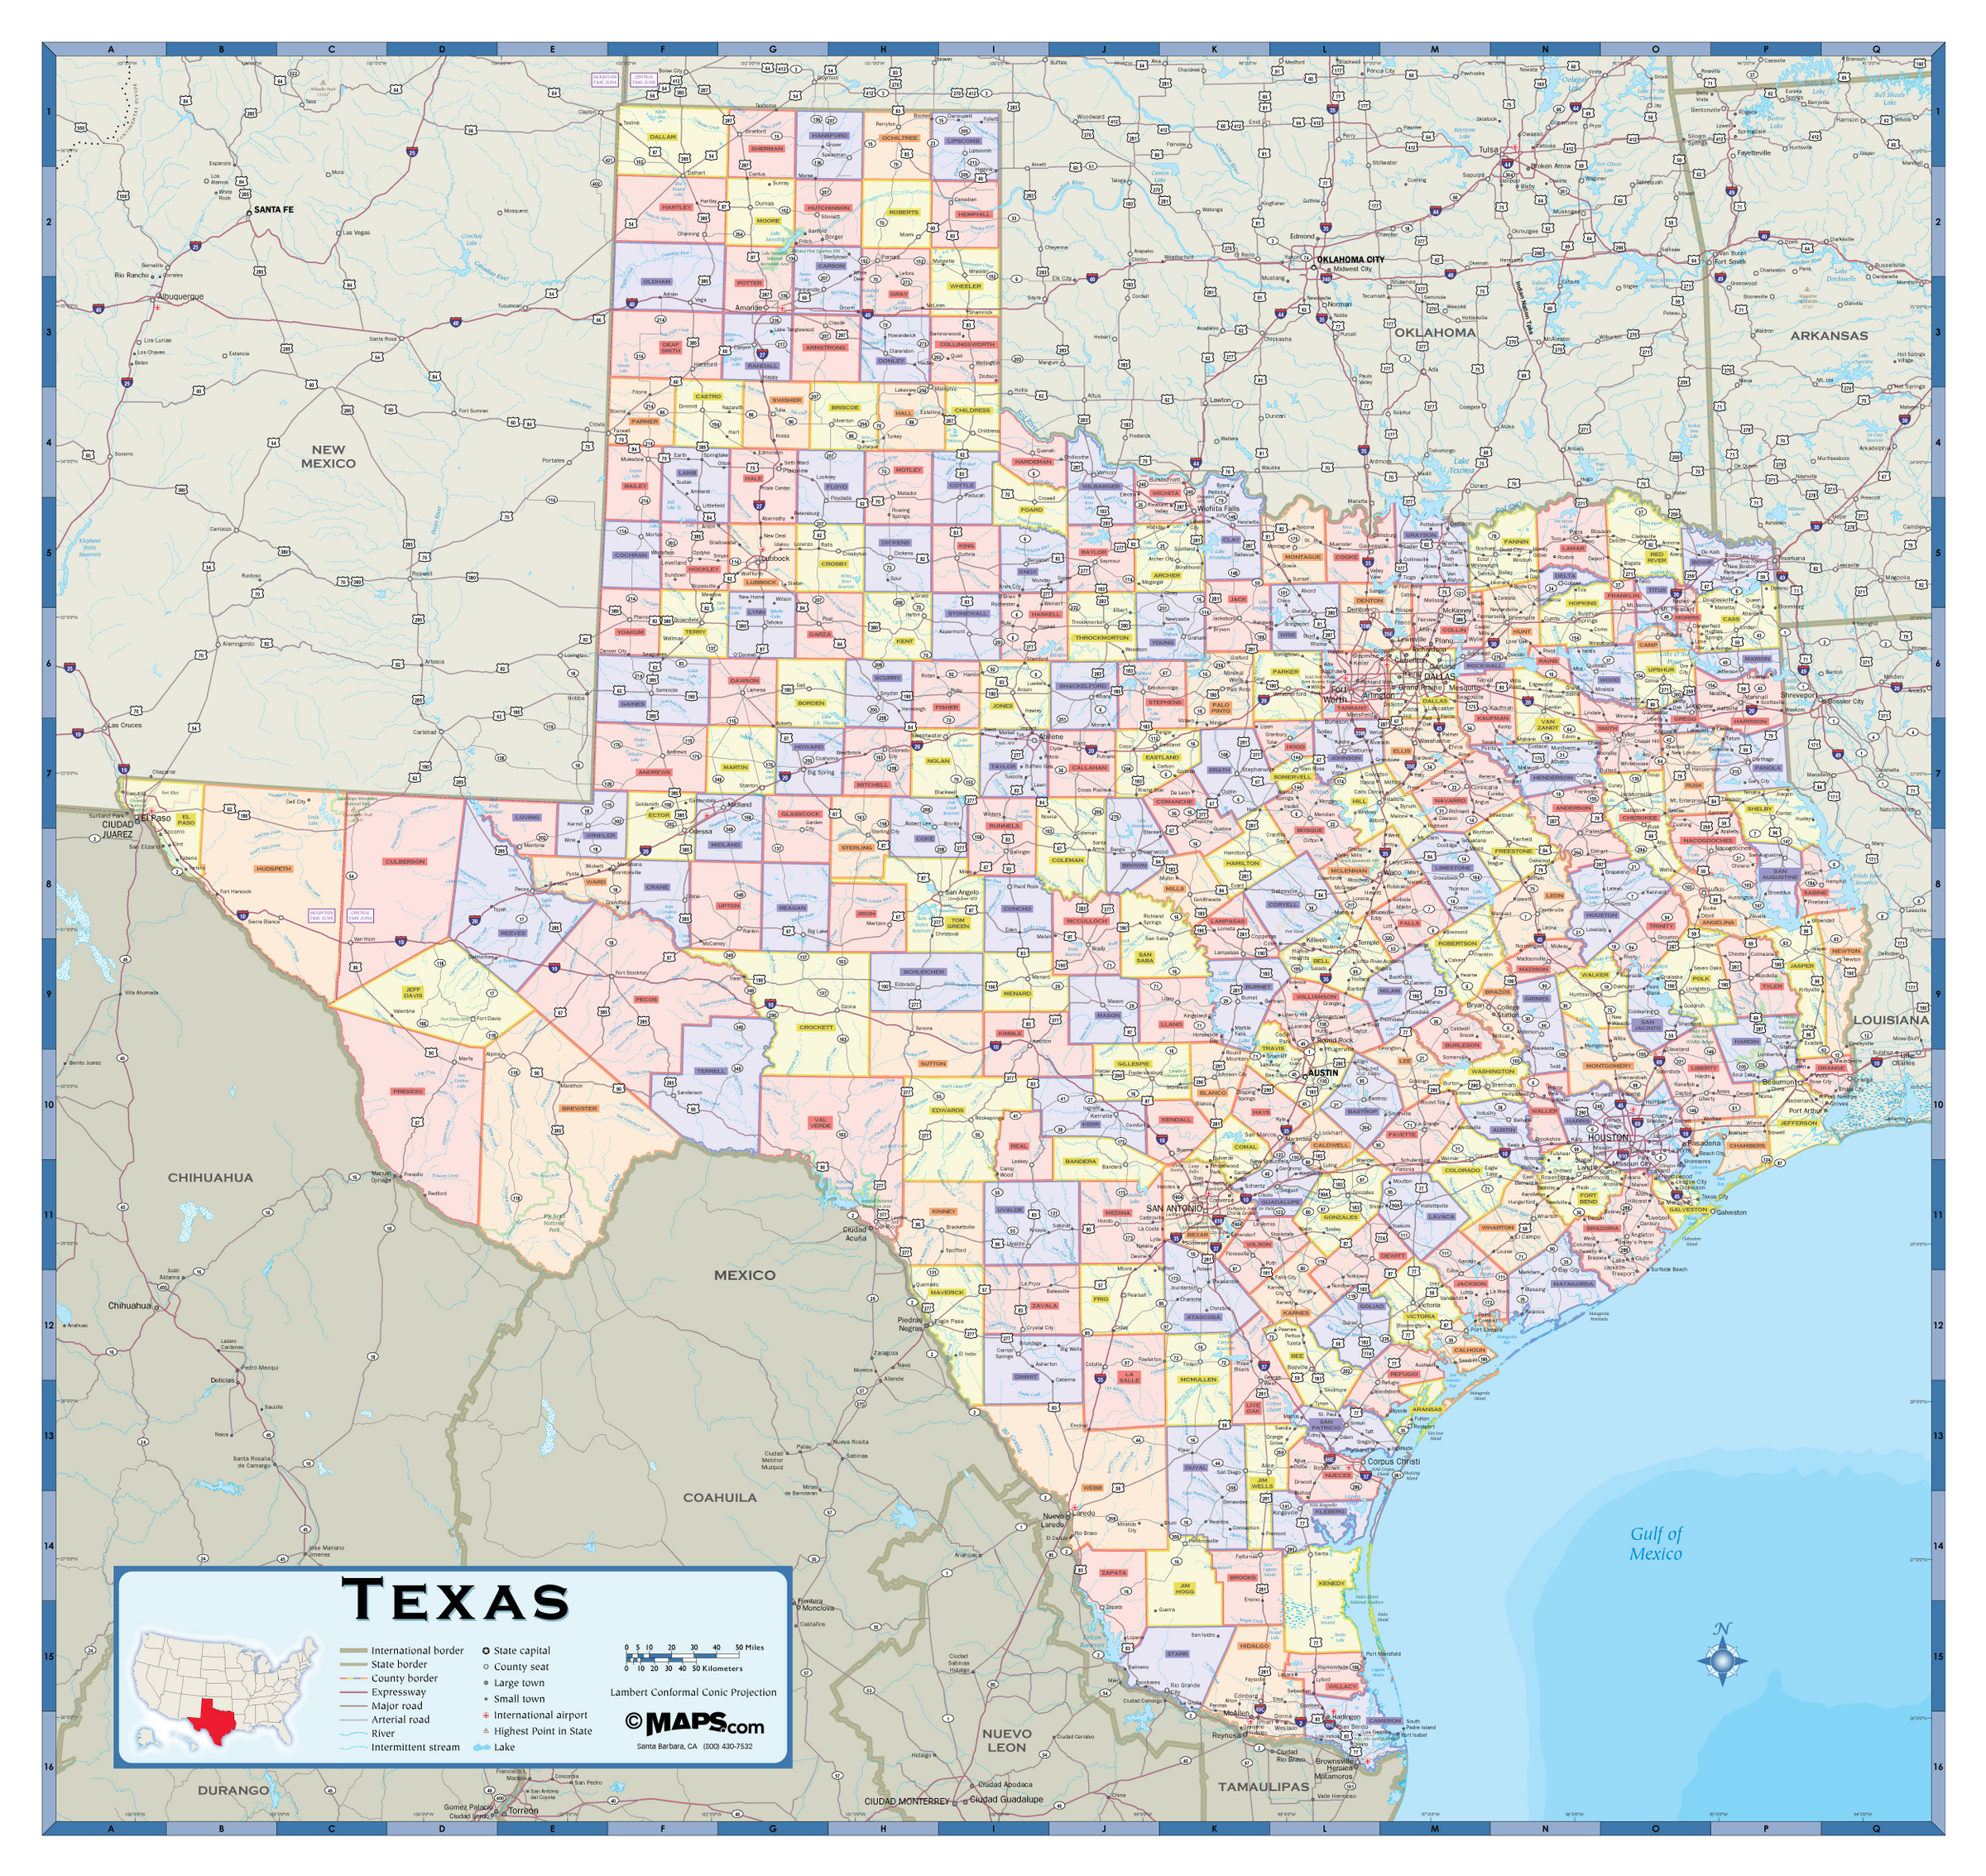 Texas Counties Wall Map | Maps.com.com